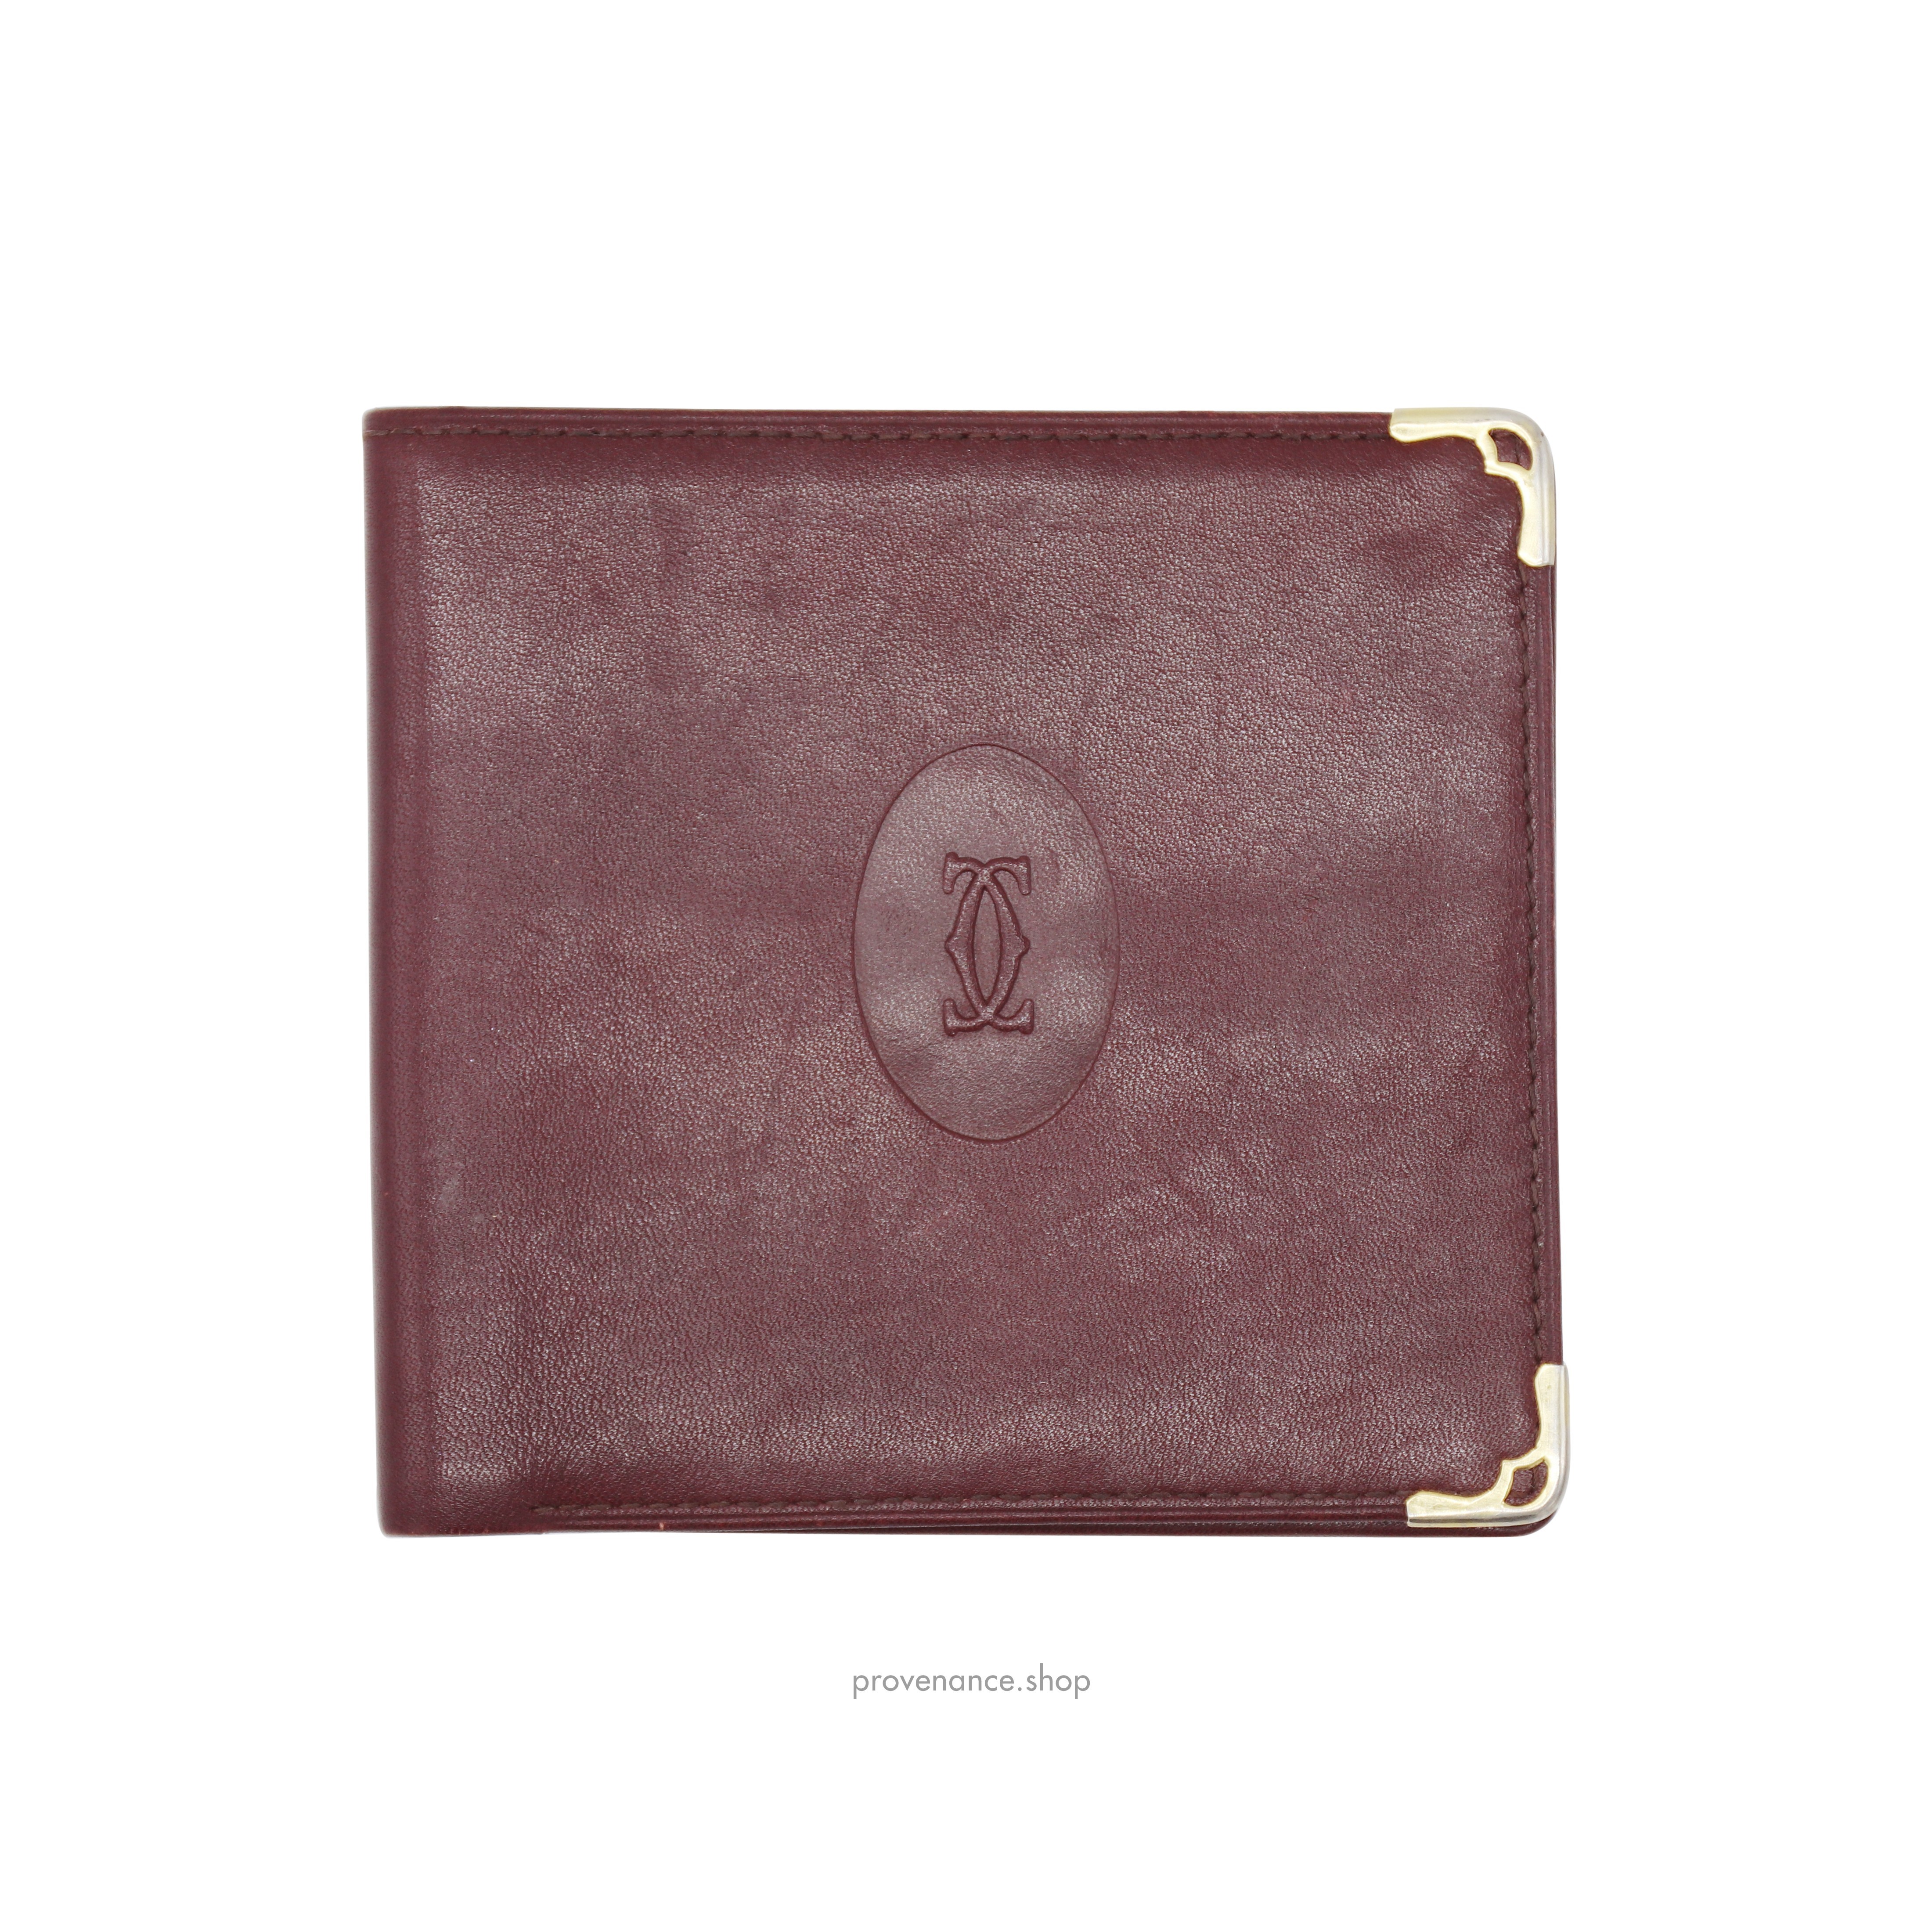 Cartier Bifold Wallet - Burgundy Calfskin Leather - 1